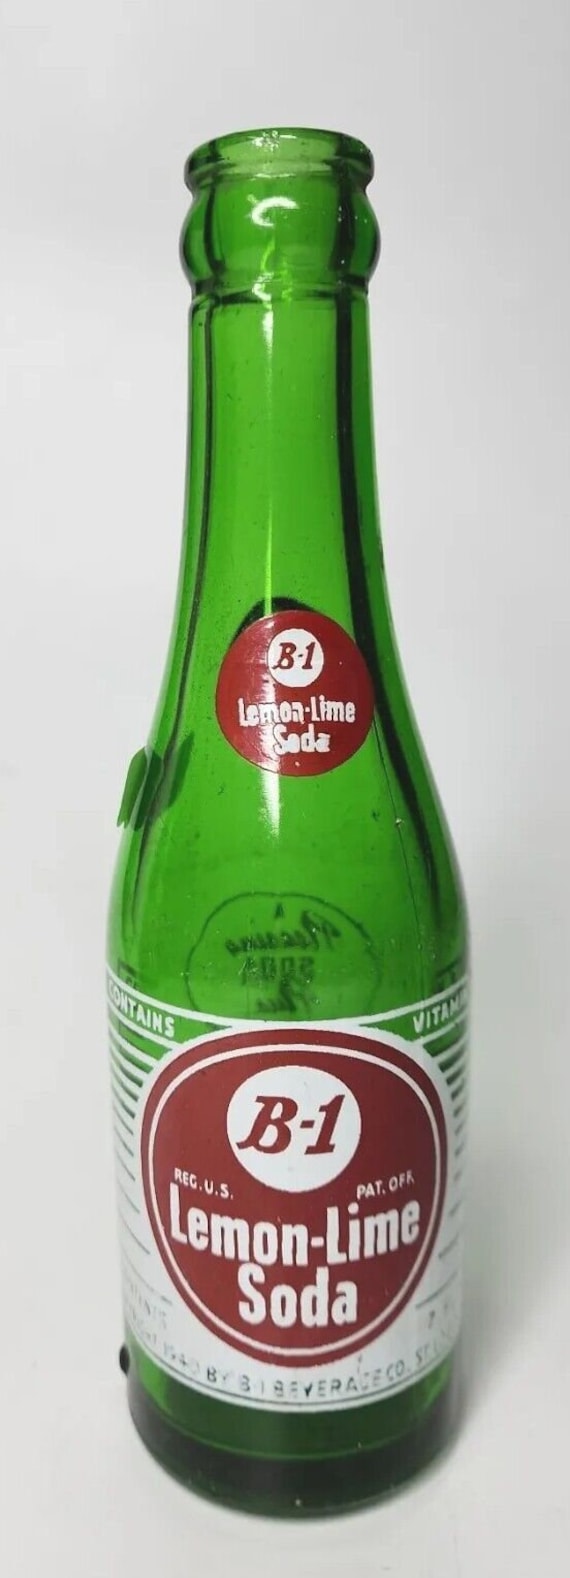 Vtg 1960's pop acl soda bottle 7oz b-1 lemon lime… - image 1